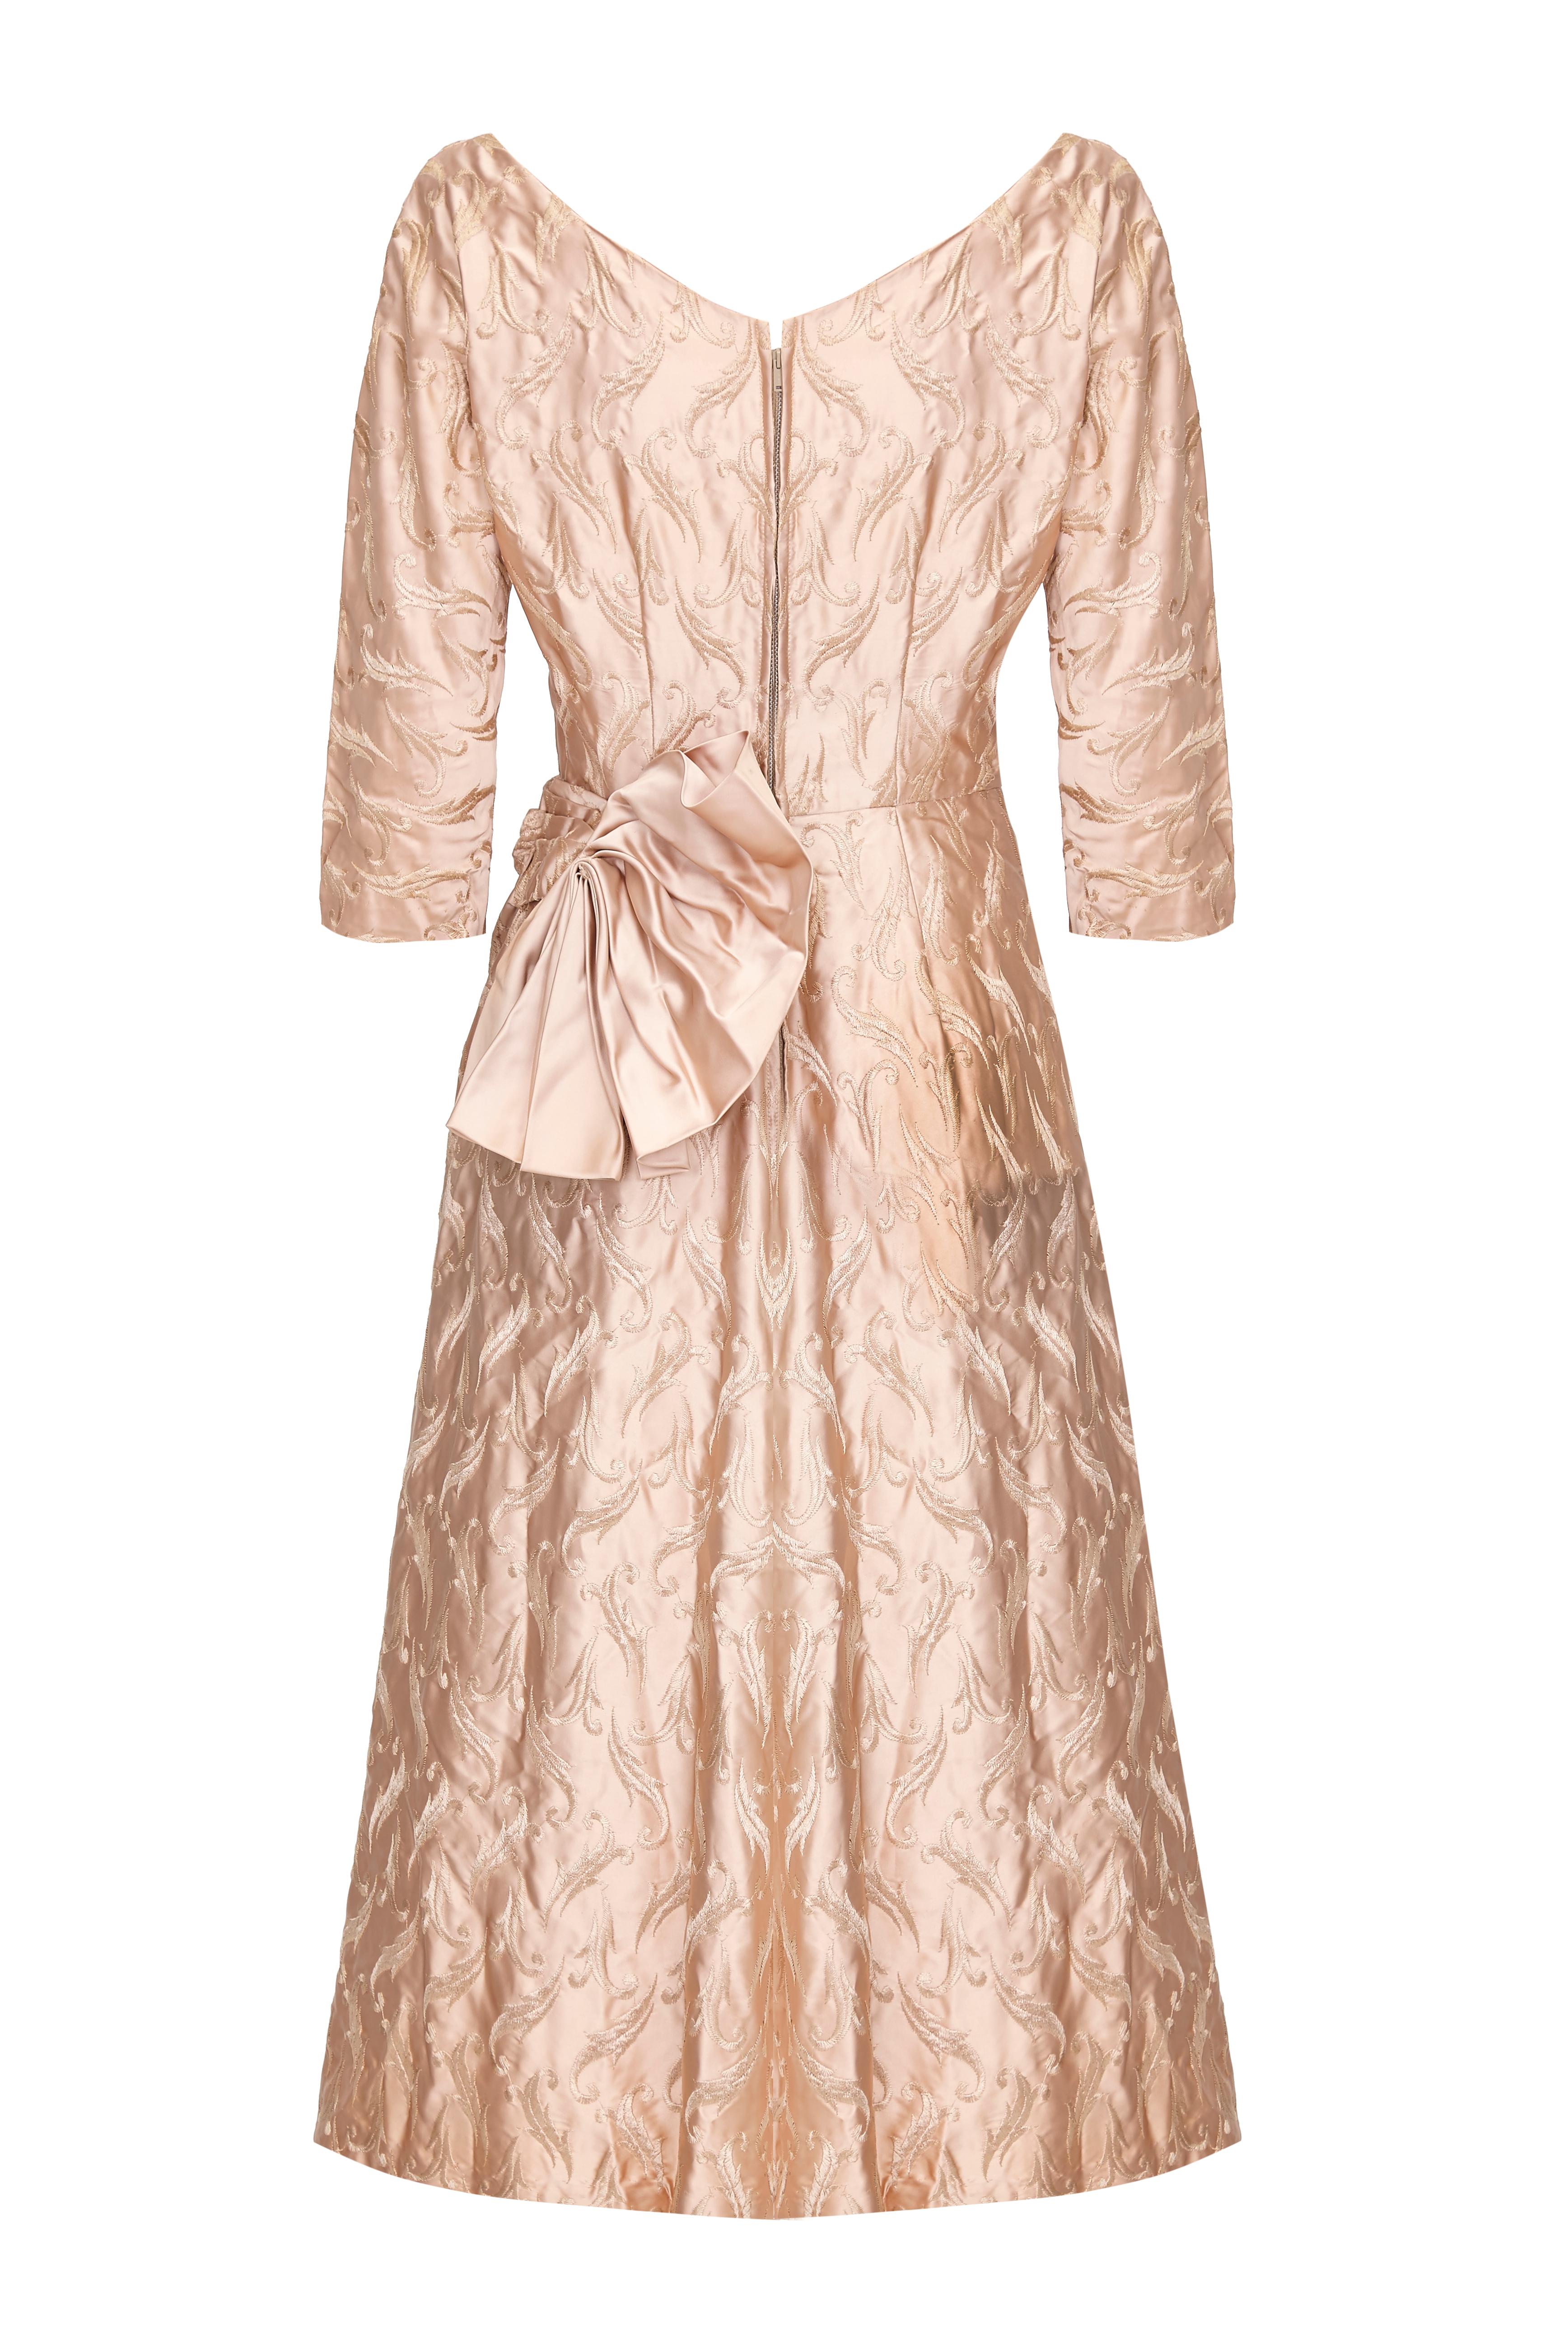 Magnifique robe vintage des années 1950 de fabrication américaine en satin antique or rose avec broderies sur l'ensemble du corps.  Cette jolie pièce présente des manches trois quarts, un décolleté en cœur, un jupon en tulle pour plus de volume, un